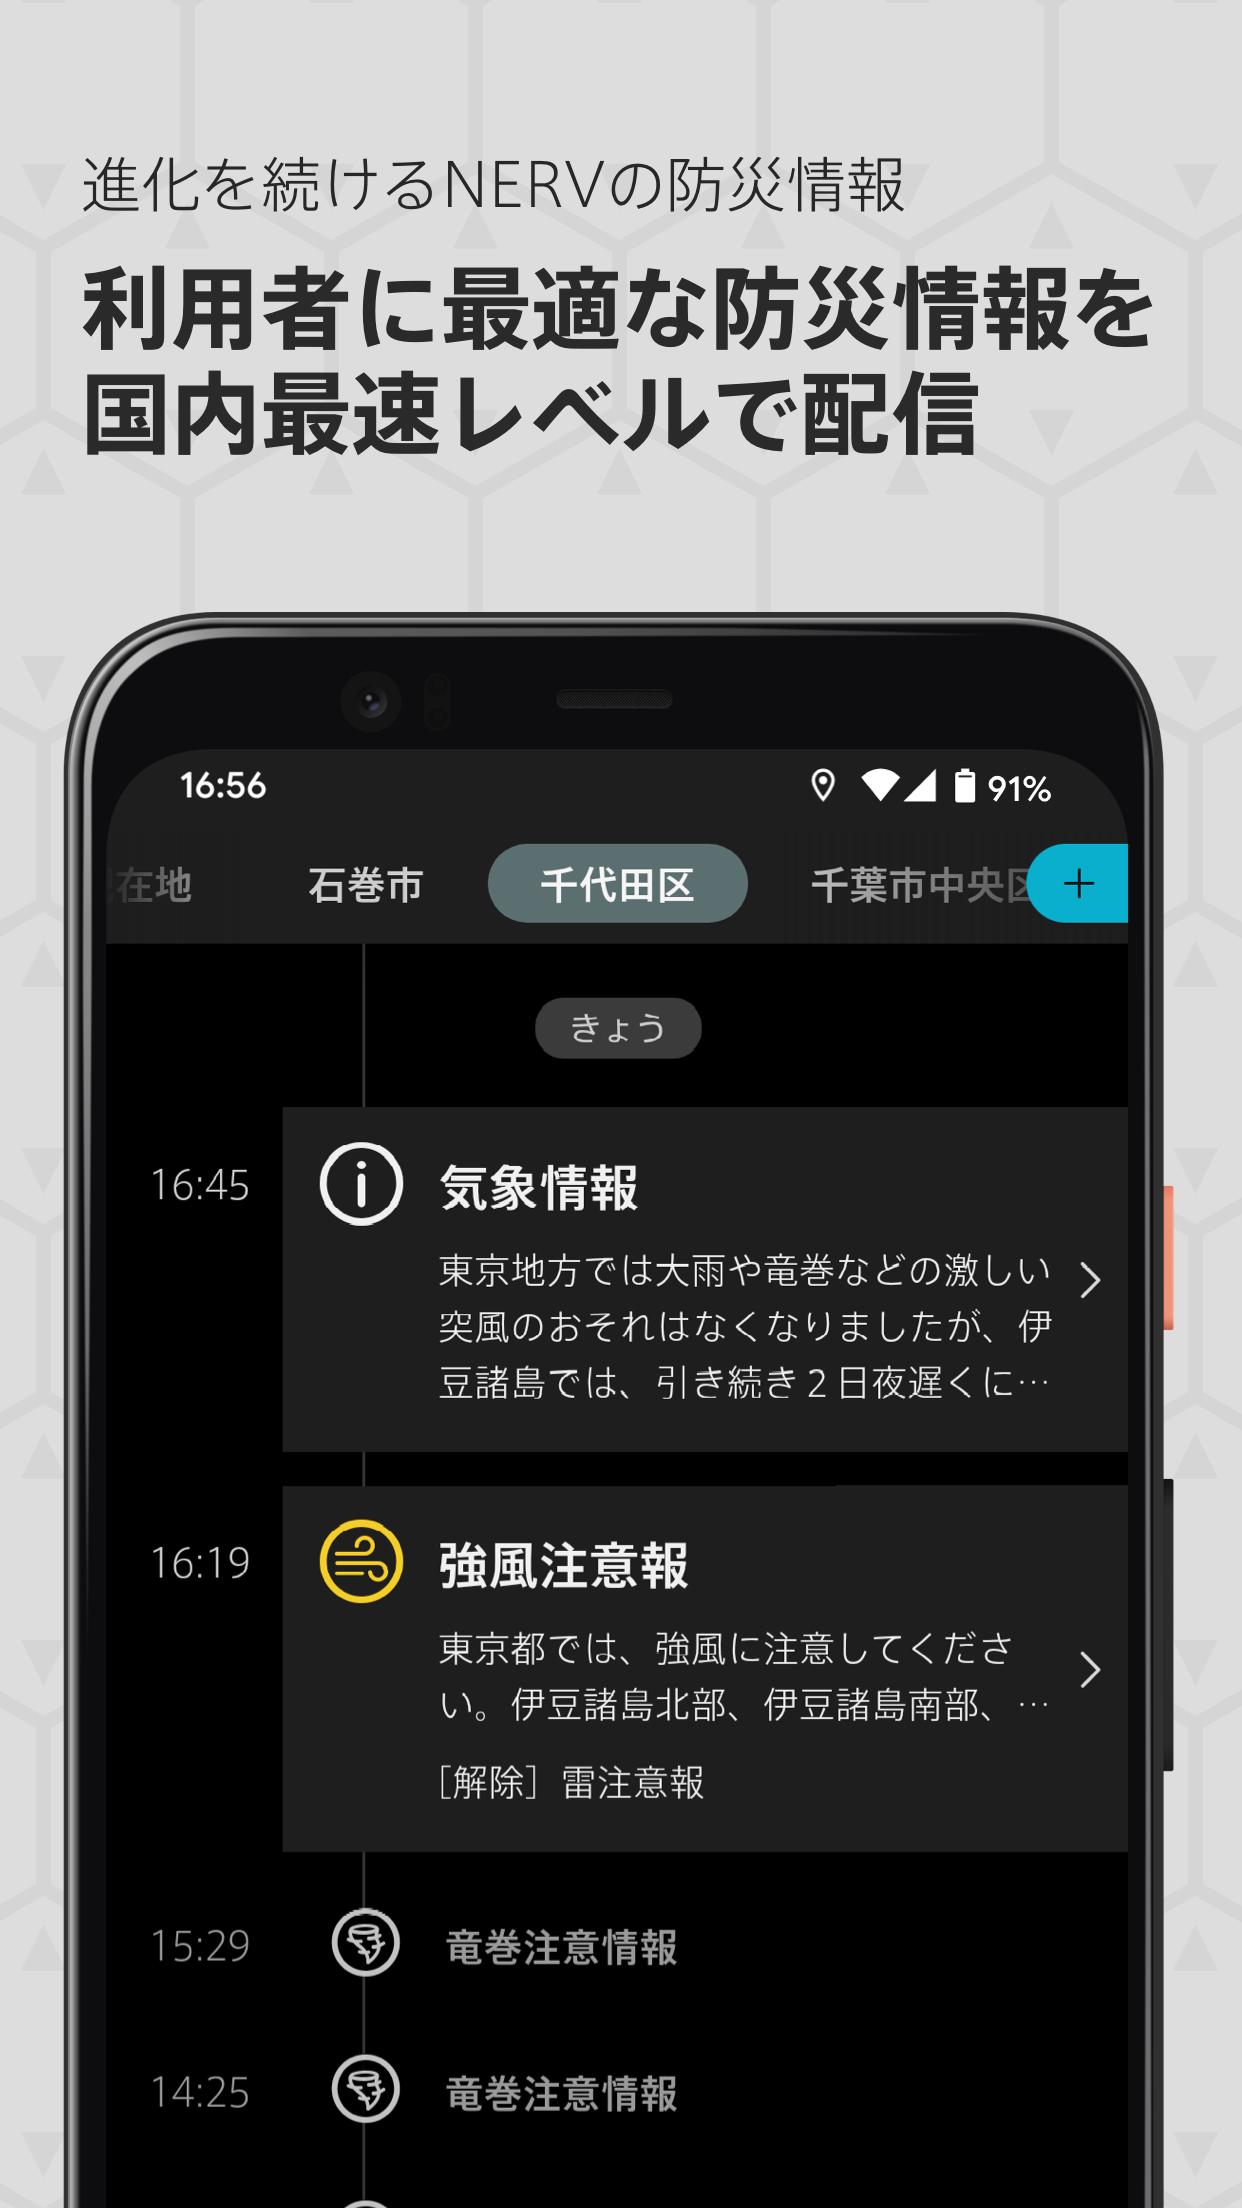 特務機関NERV防災 2.2.2 Screenshot 2